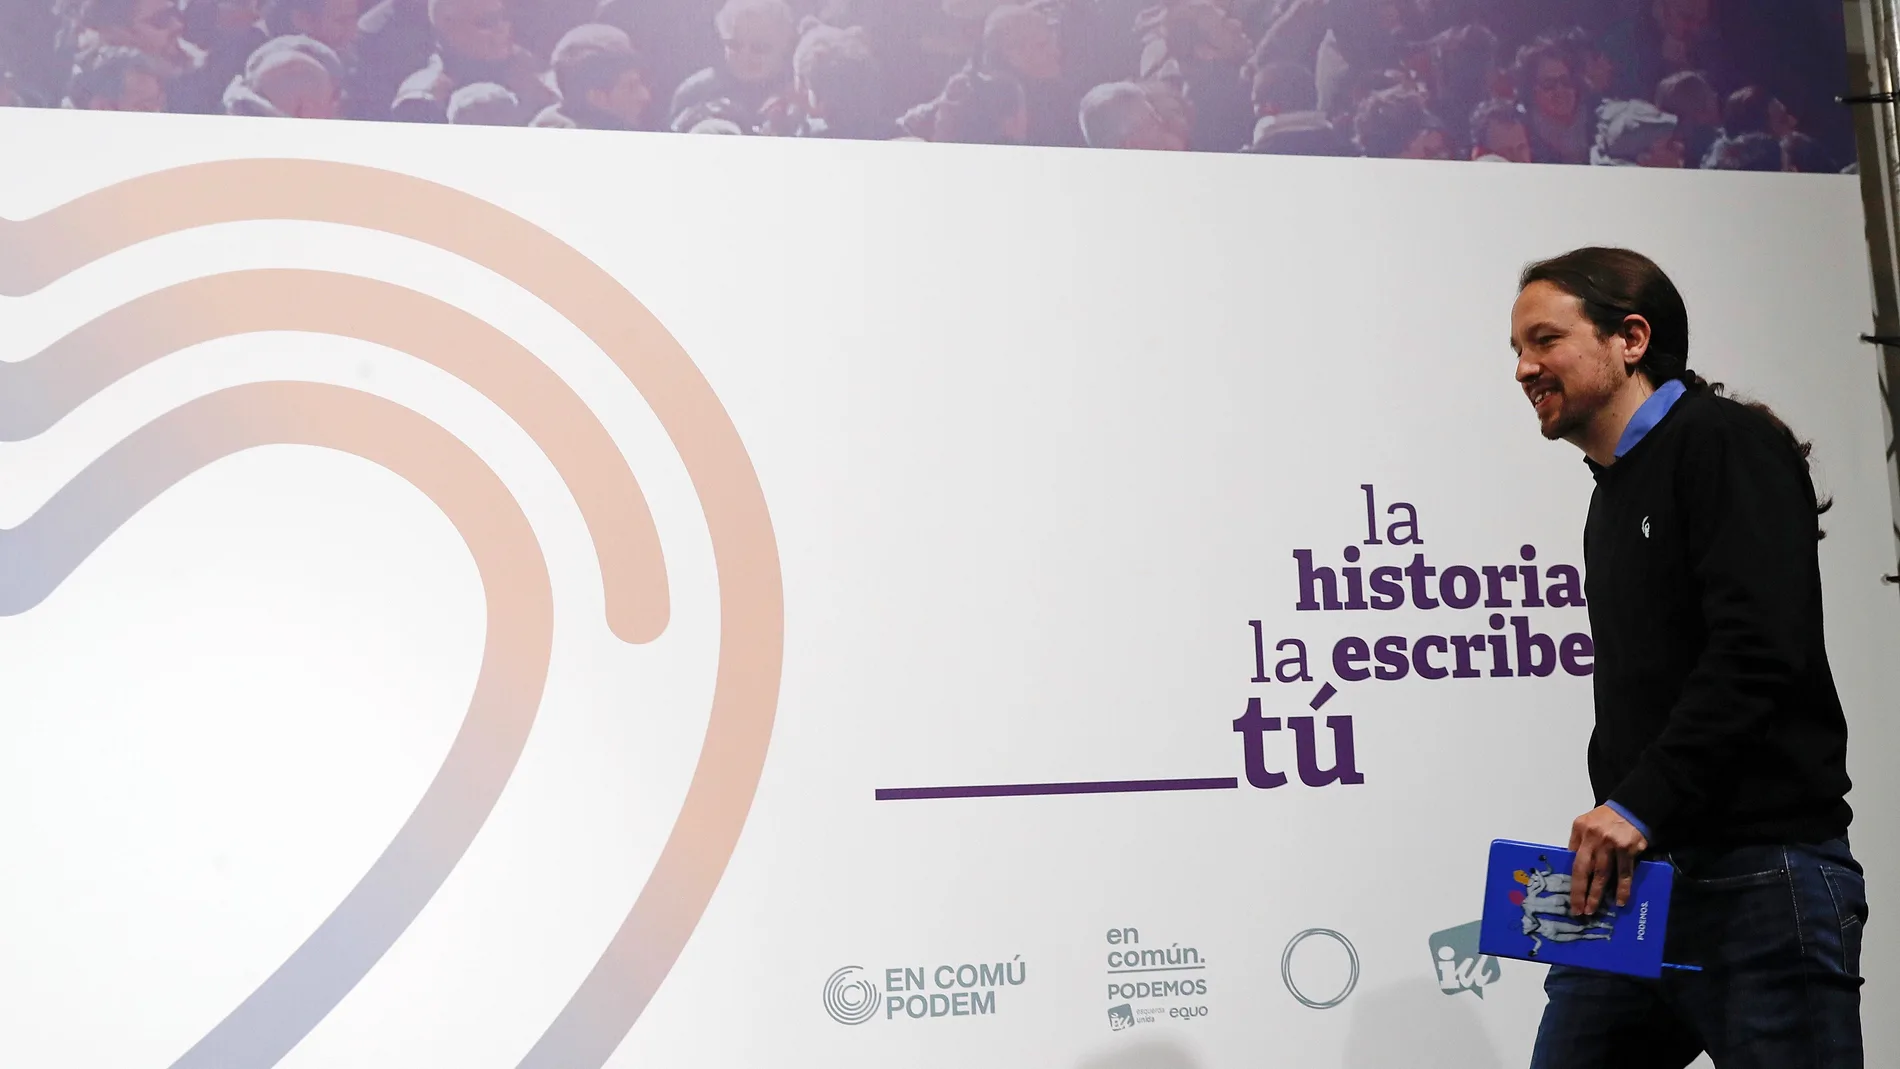 El candidato de Unidas Podemos, Pablo Iglesias